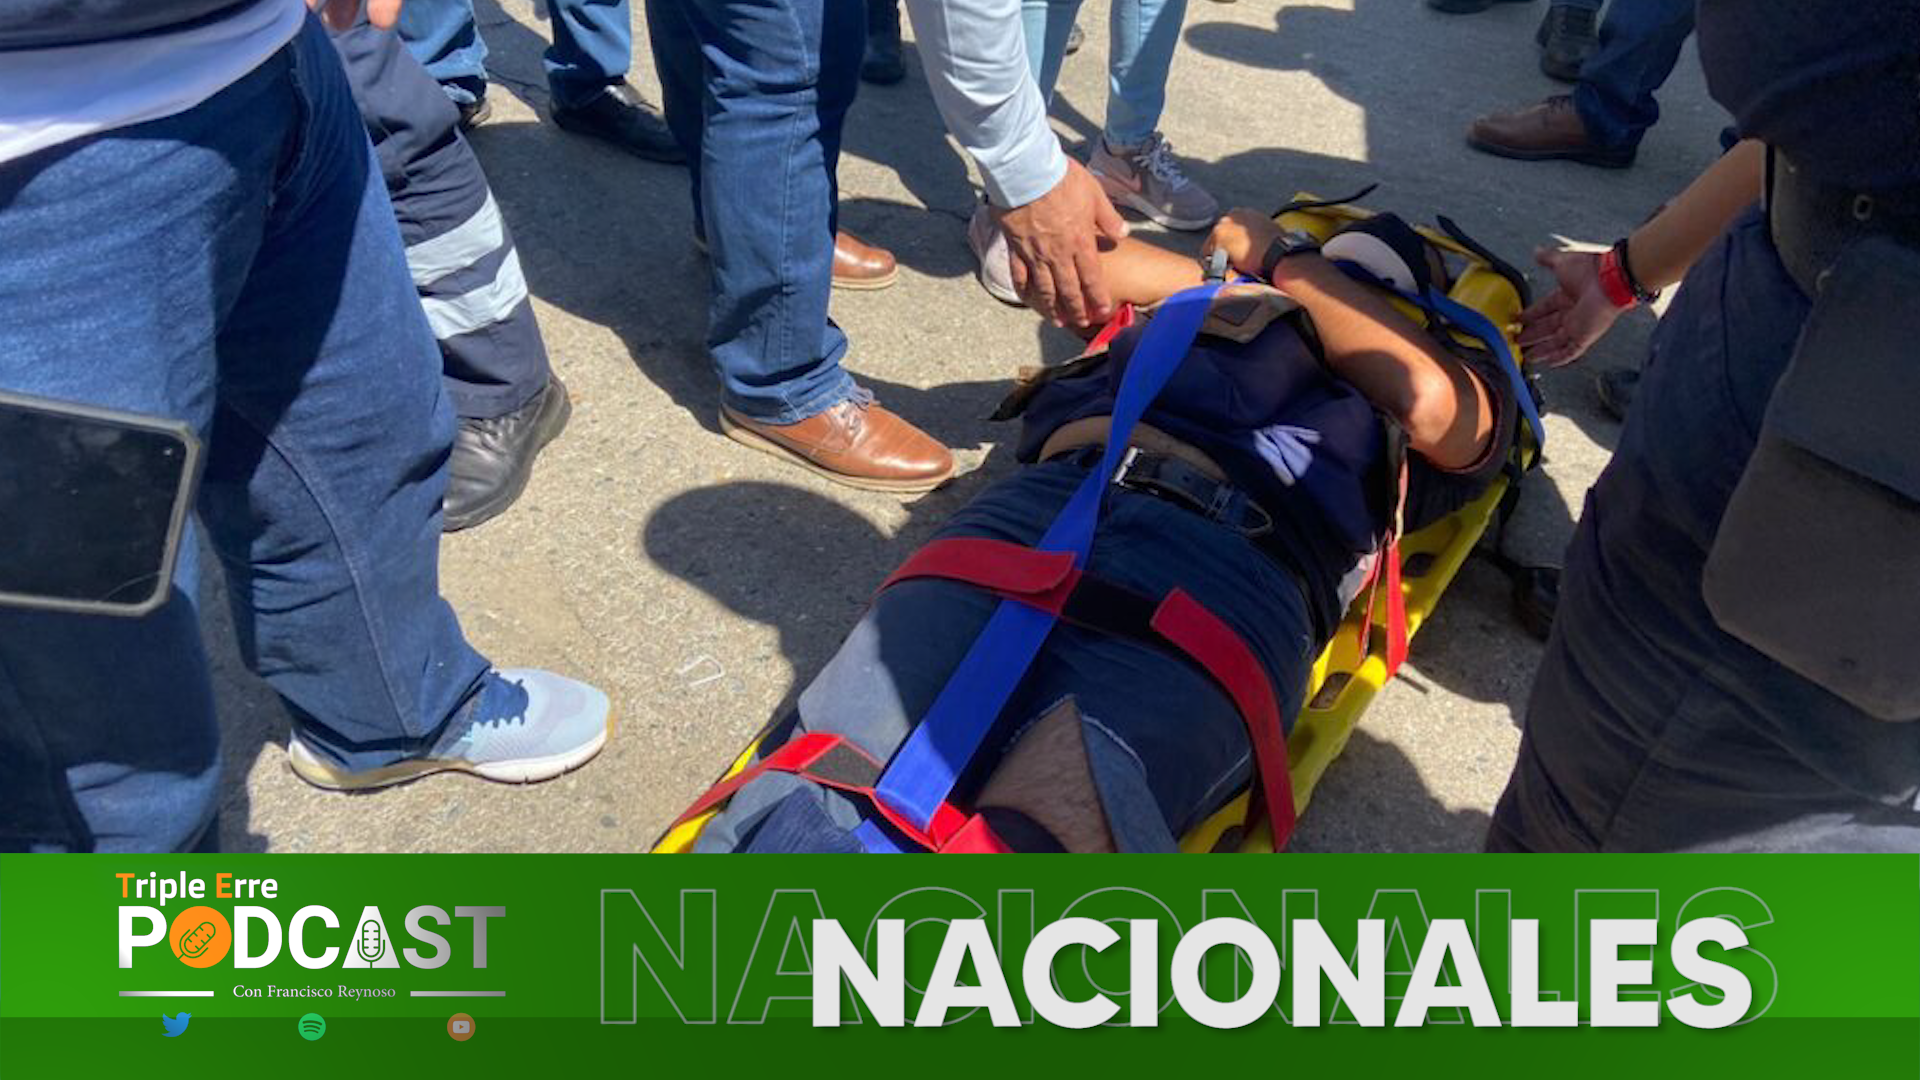 Grupo de choque de CATEM agredió a periodista en manifestación de normalistas